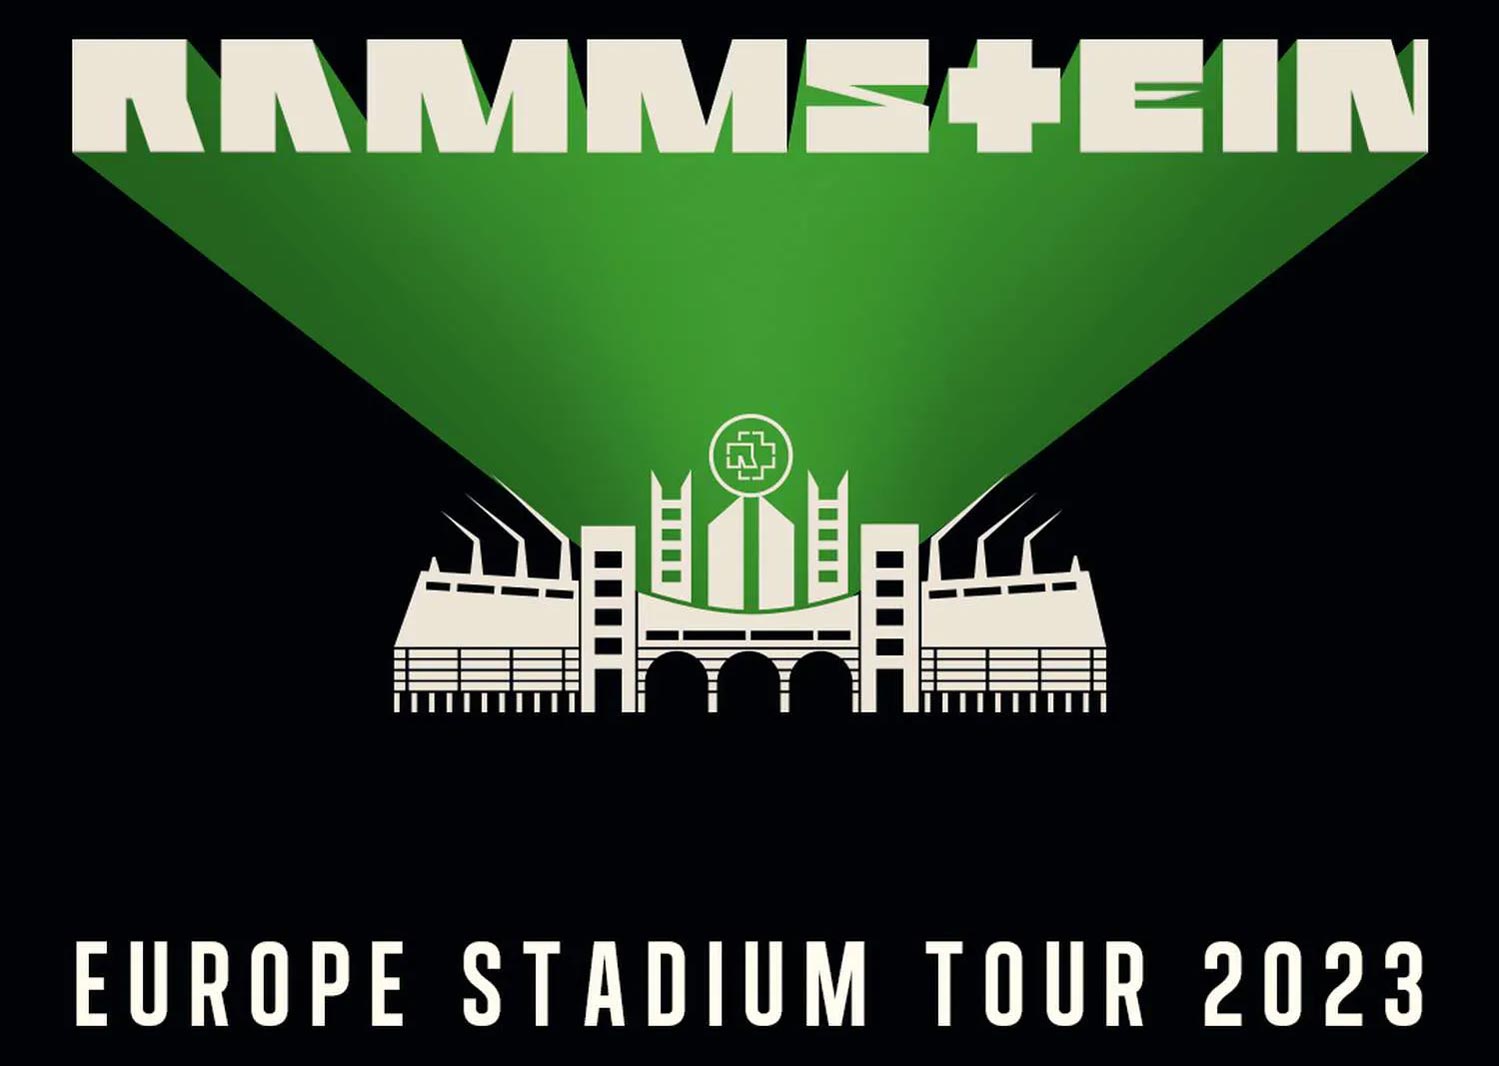 rammstein 2023 tour dates usa